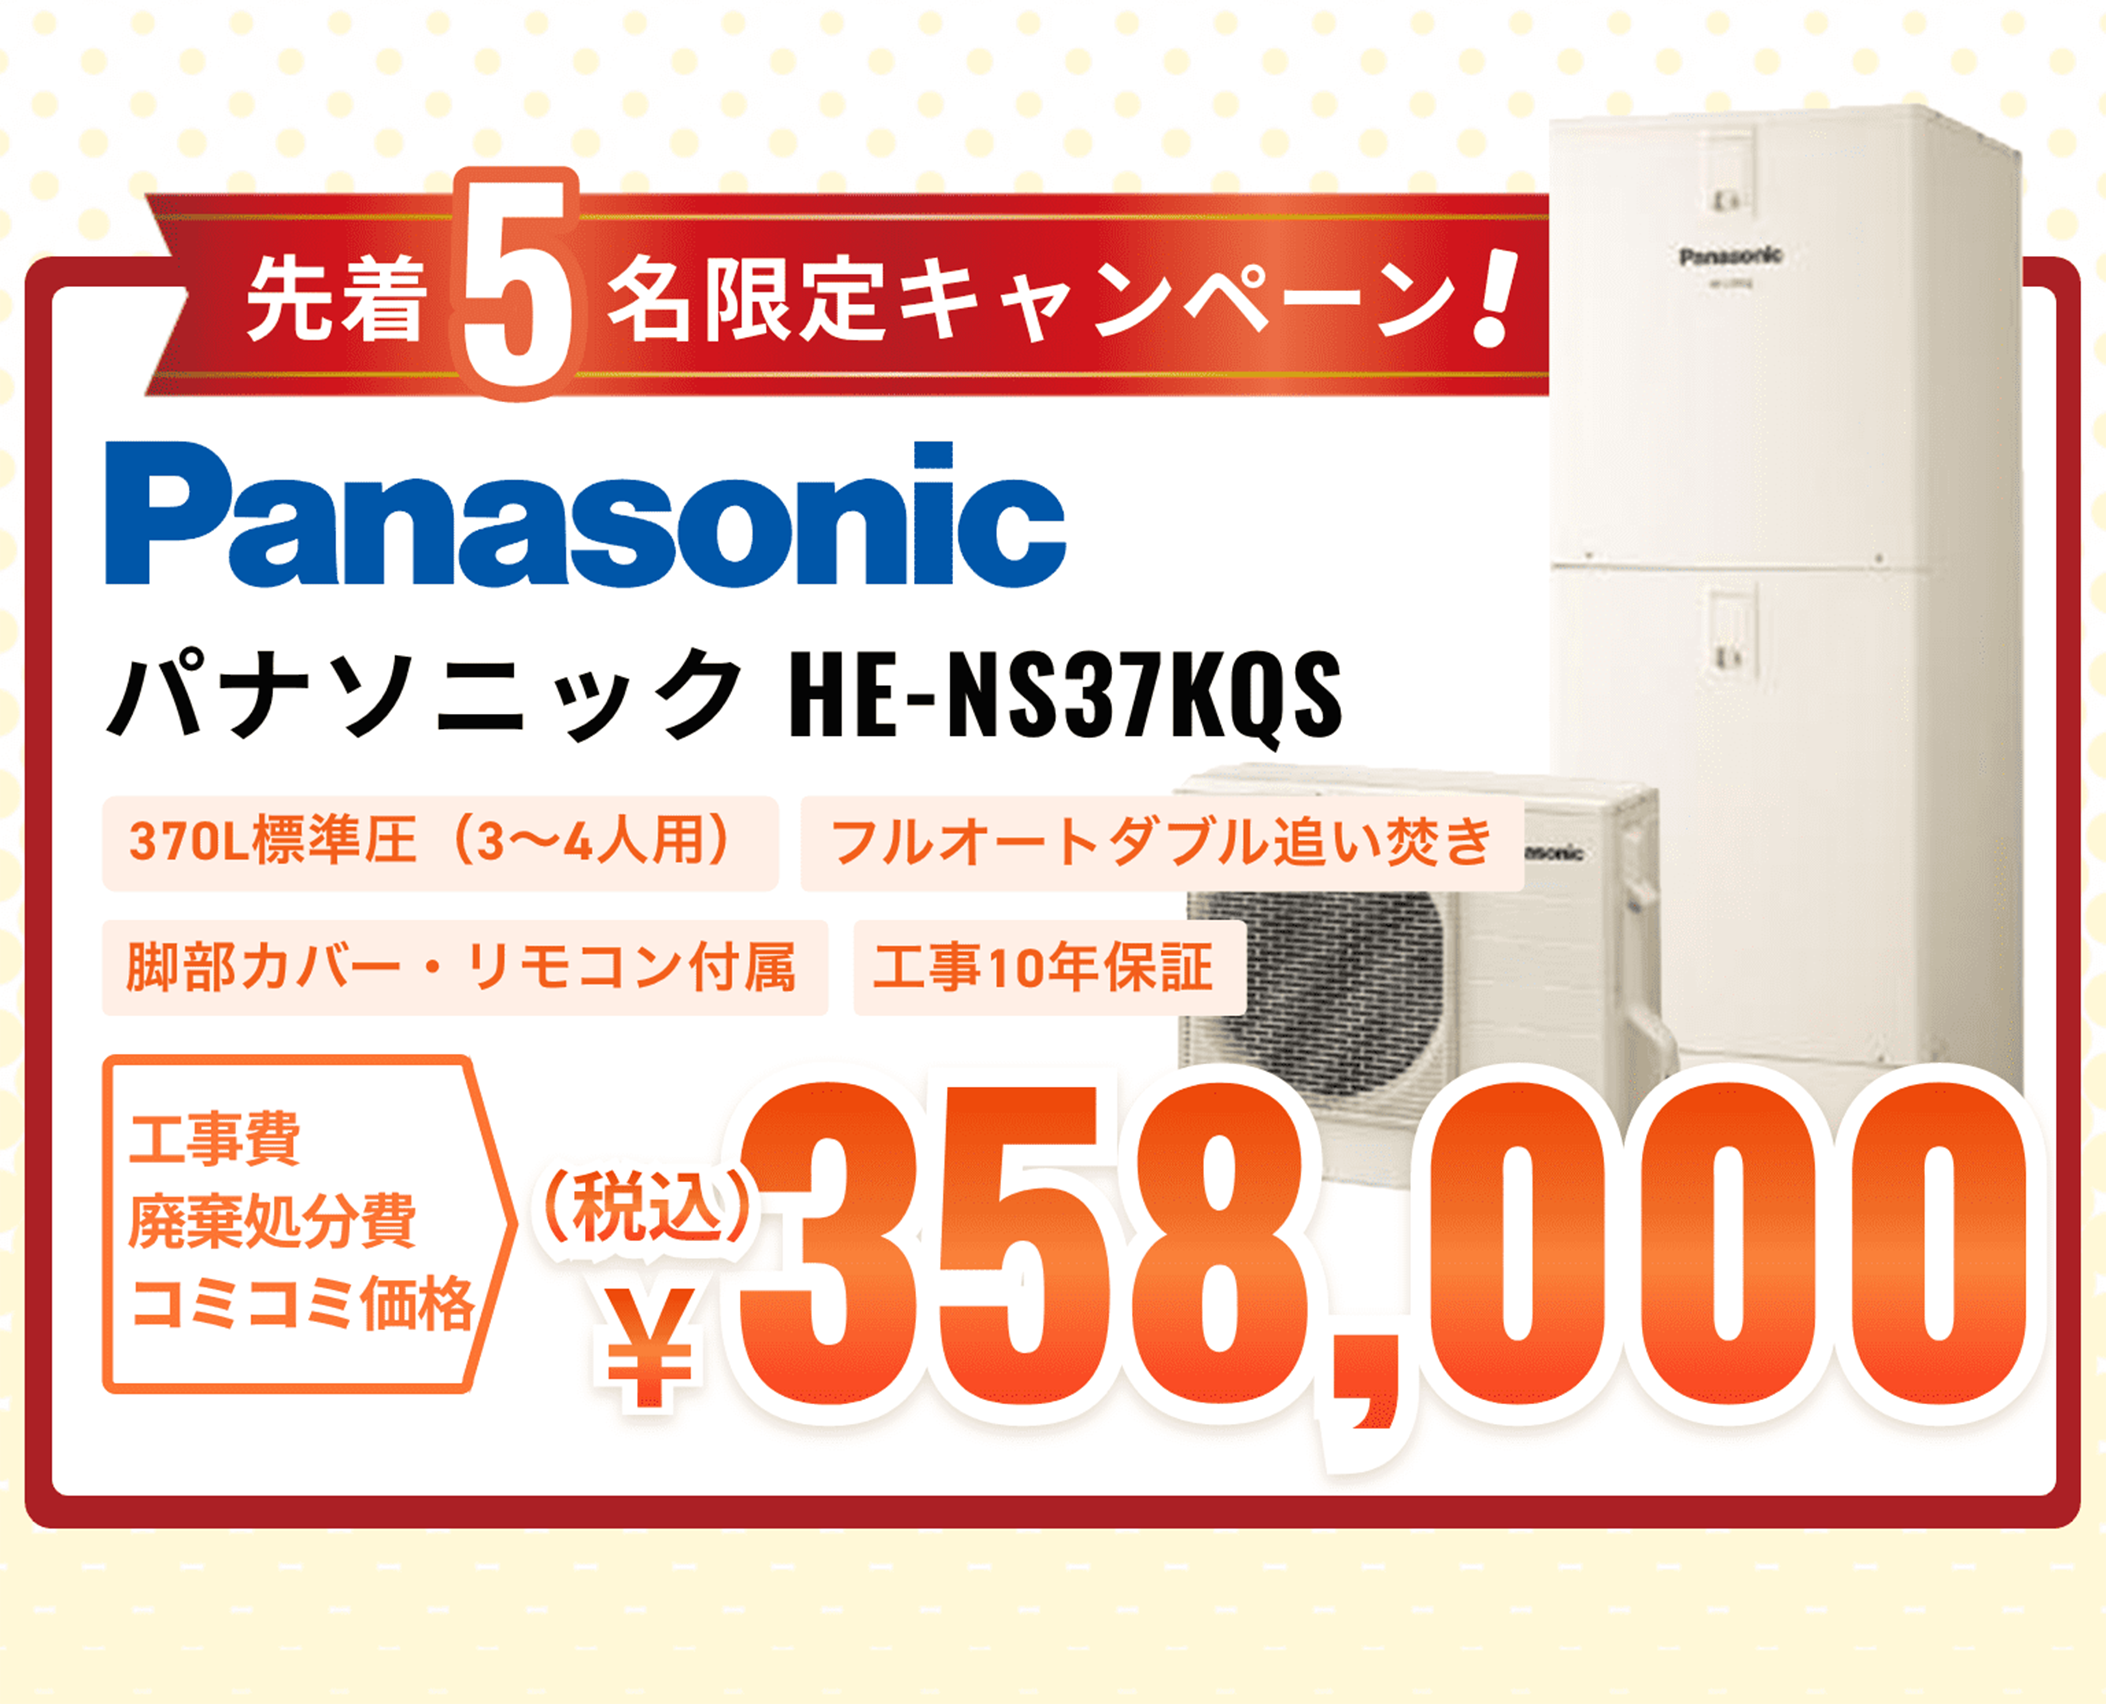 Panasonic HE-NS37KQS